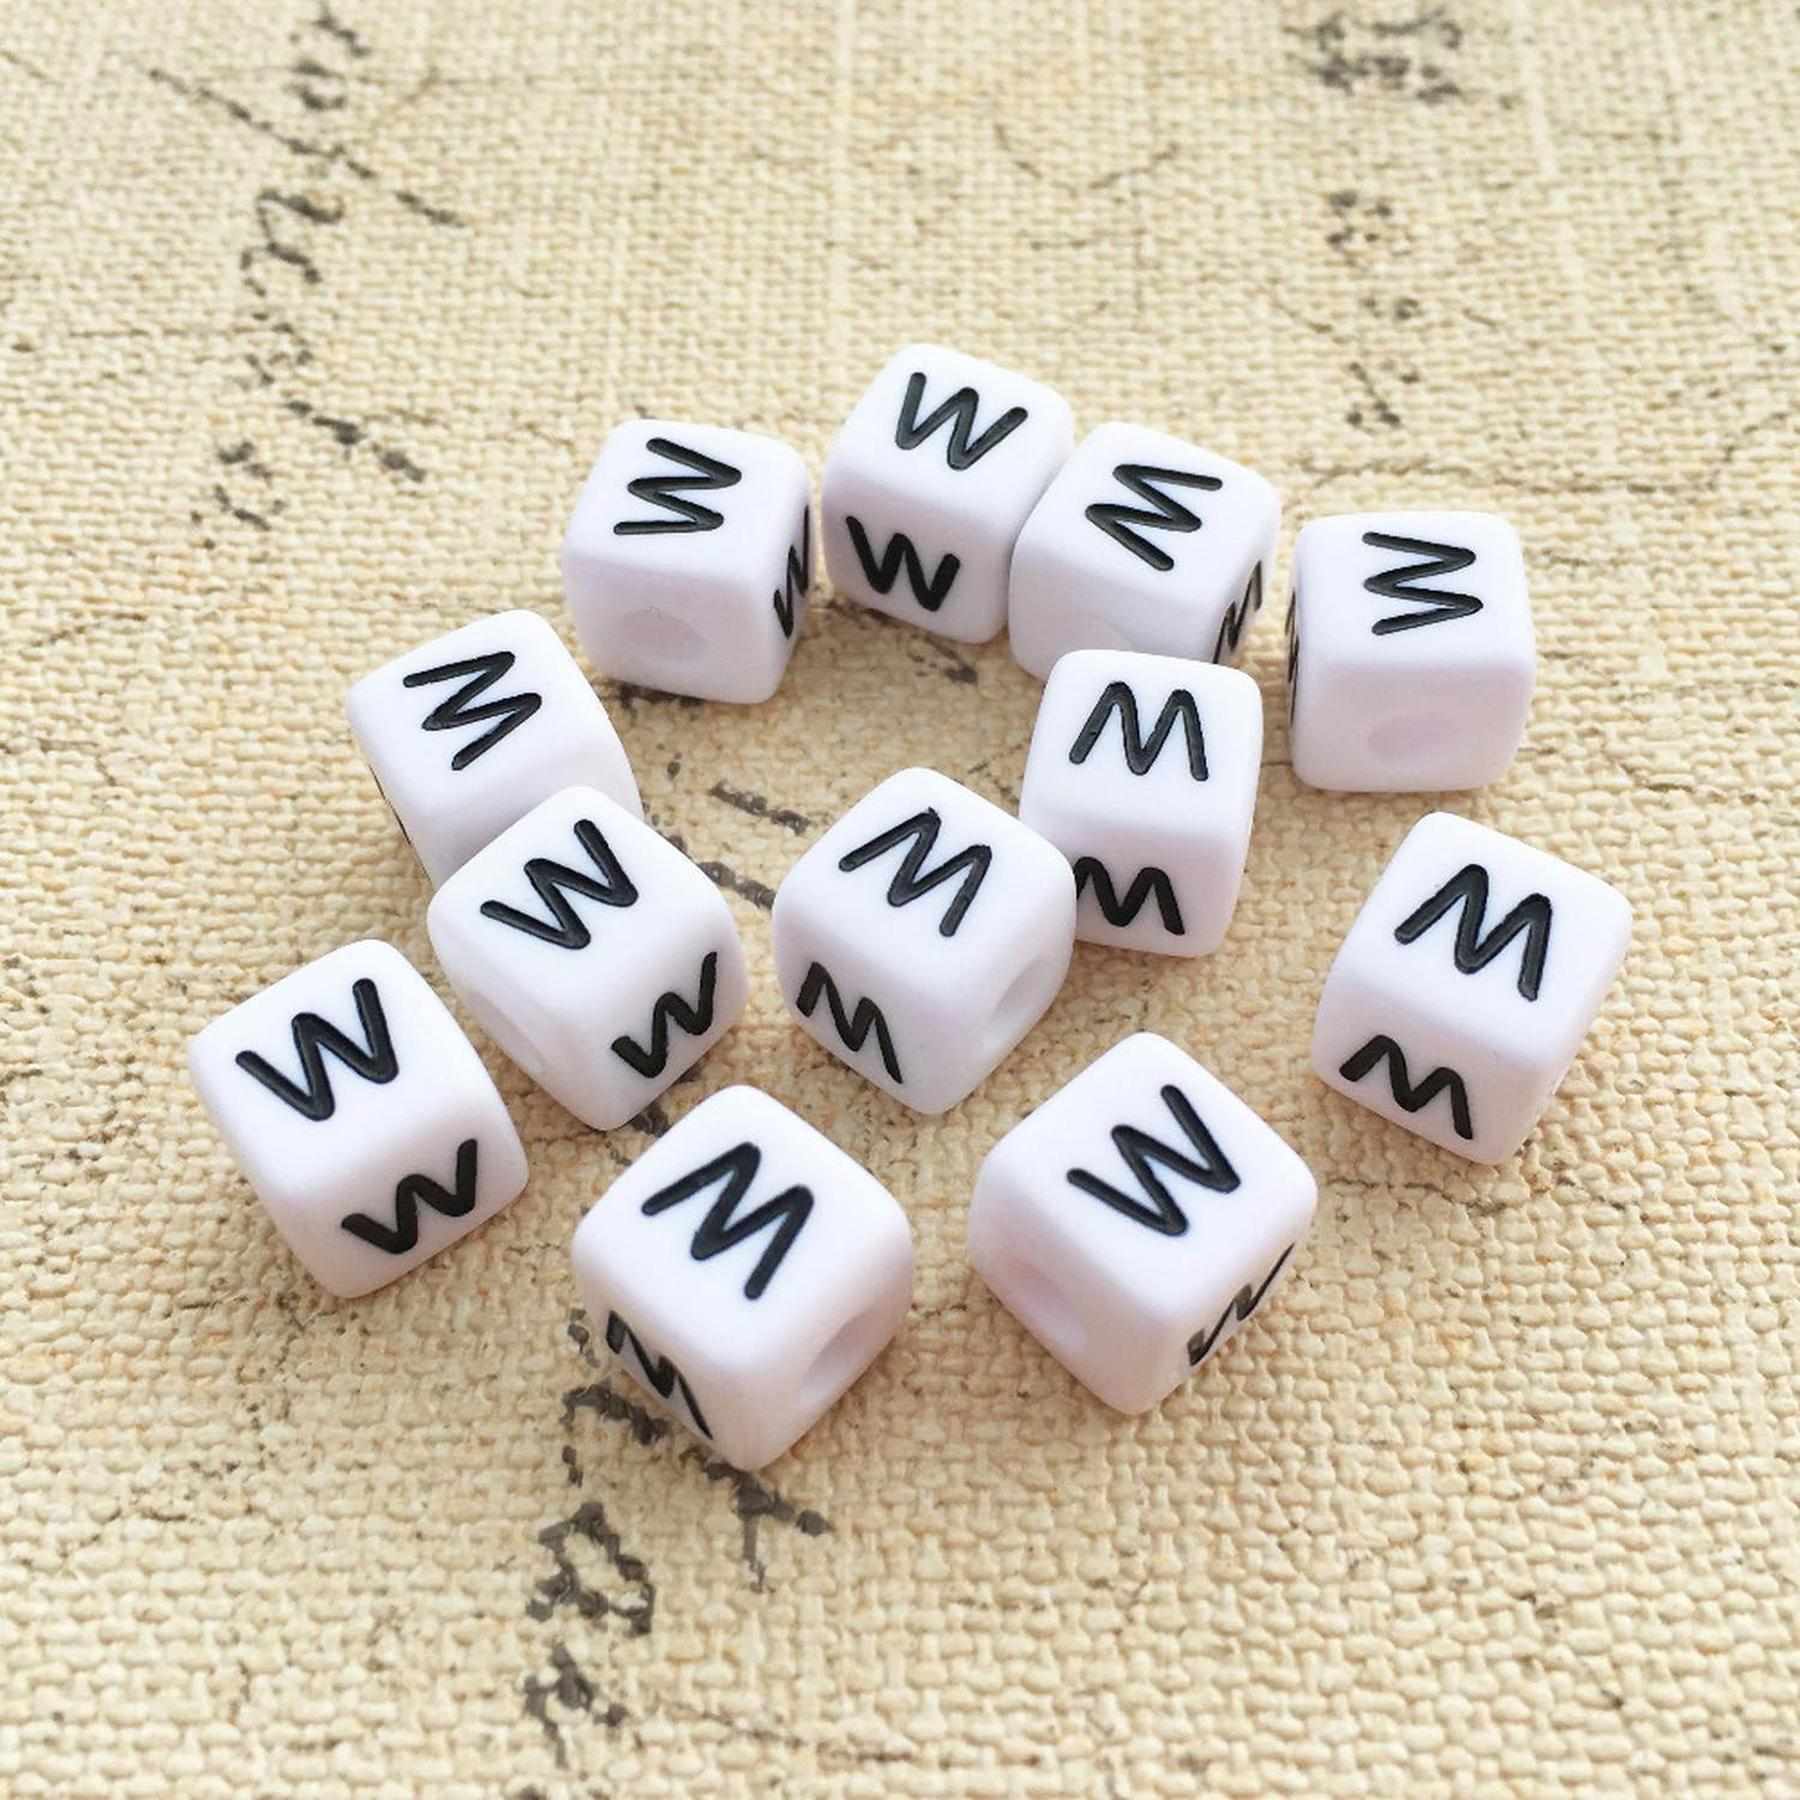 Buchstaben Perlen, 30 Stück, 6x6 mm, weiß mit schwarz, eckig, Buchstabe W